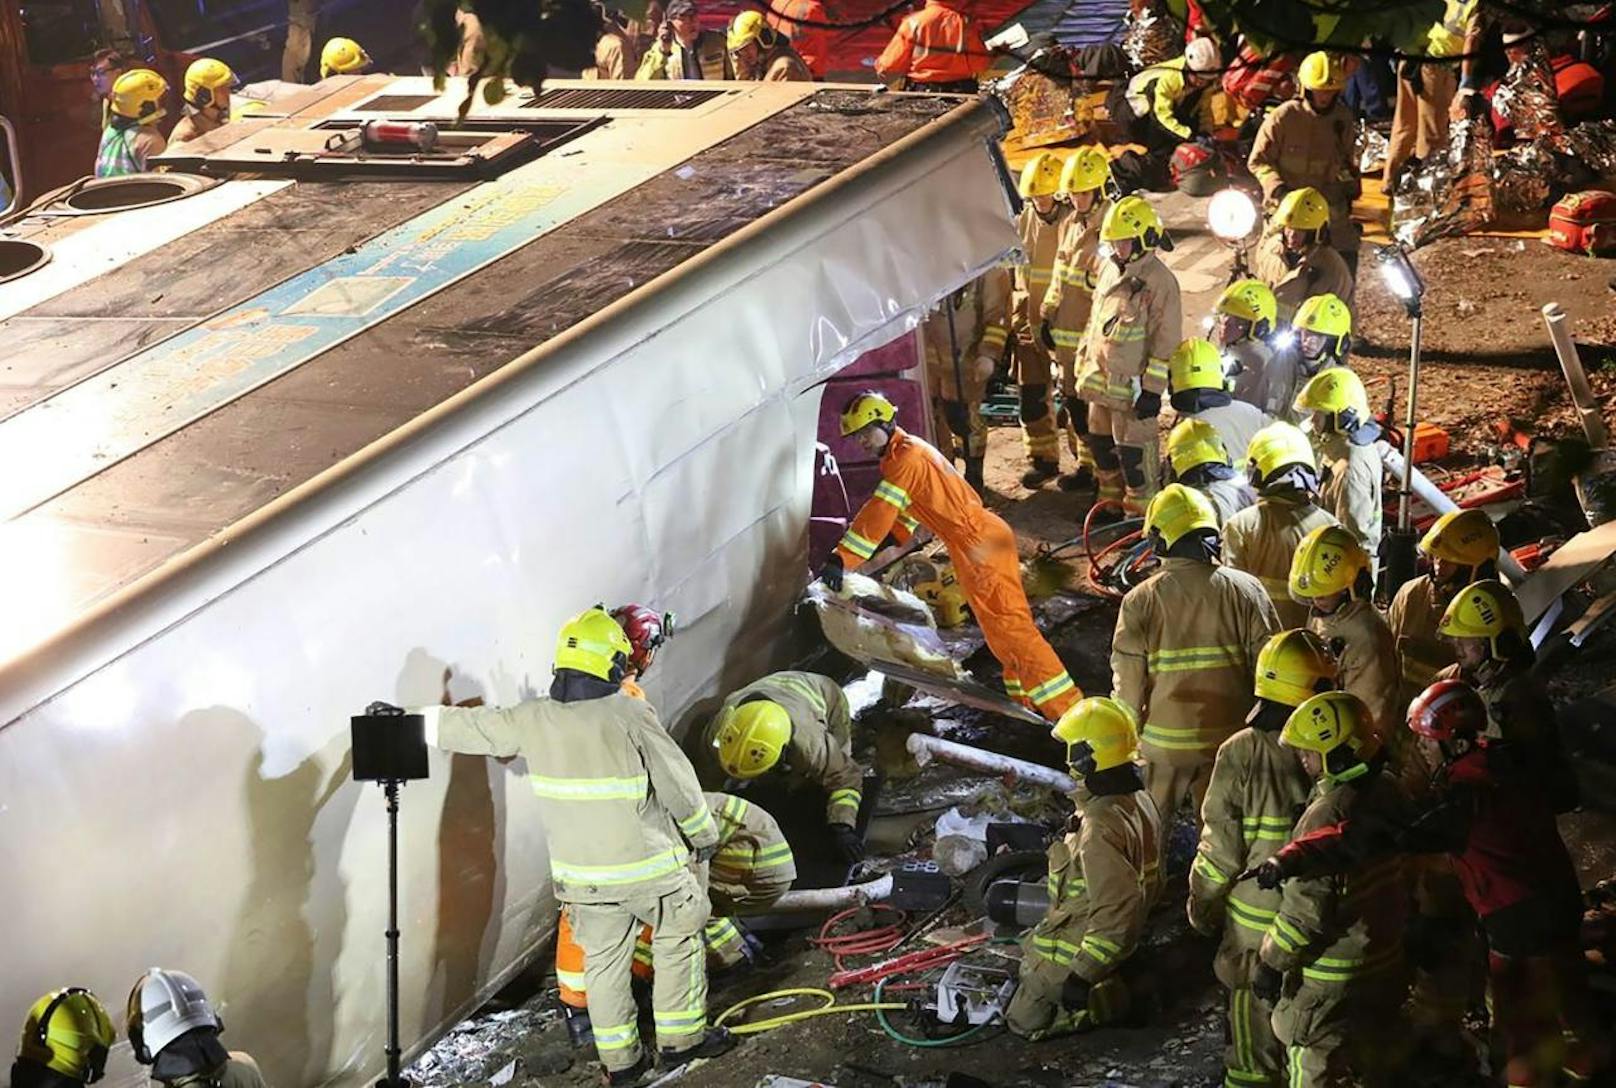 63 Fahrgäste wurden verletzt, neu davon schweben in Lebensgefahr.